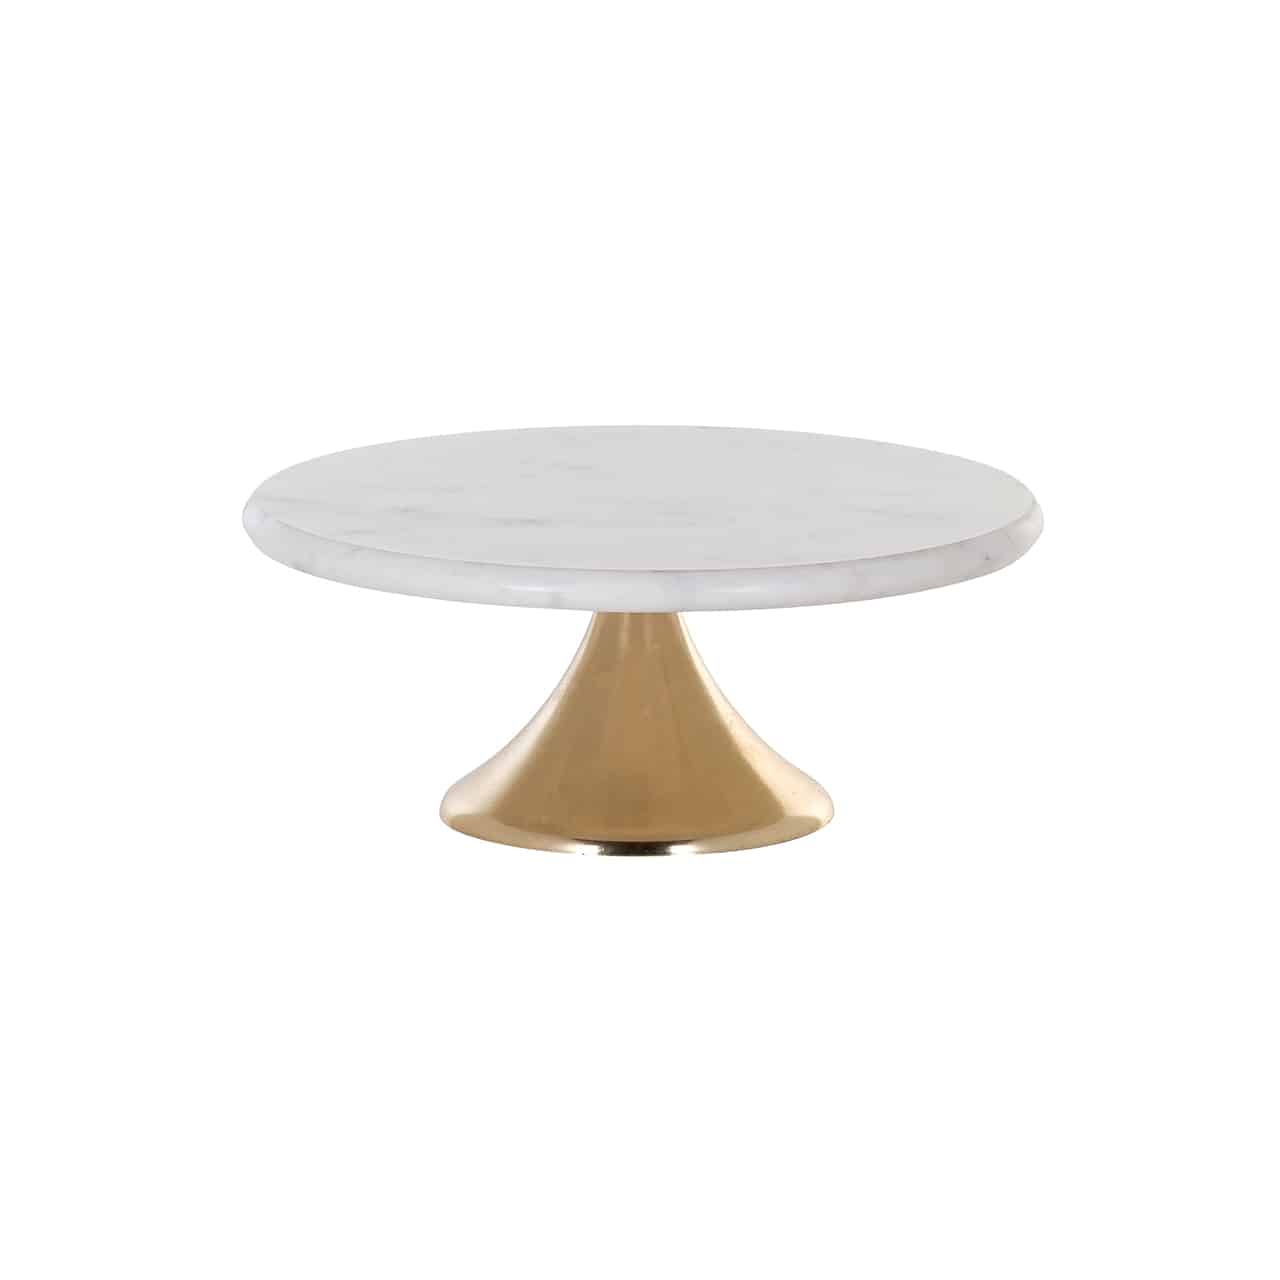 Kuchenplatte/Tortenständer von Richmond; klassisches Design; auf einem nach oben dünner werdenden runden Sockel in gold ist eine fingerdicke, runde Platte in weiß angebracht.